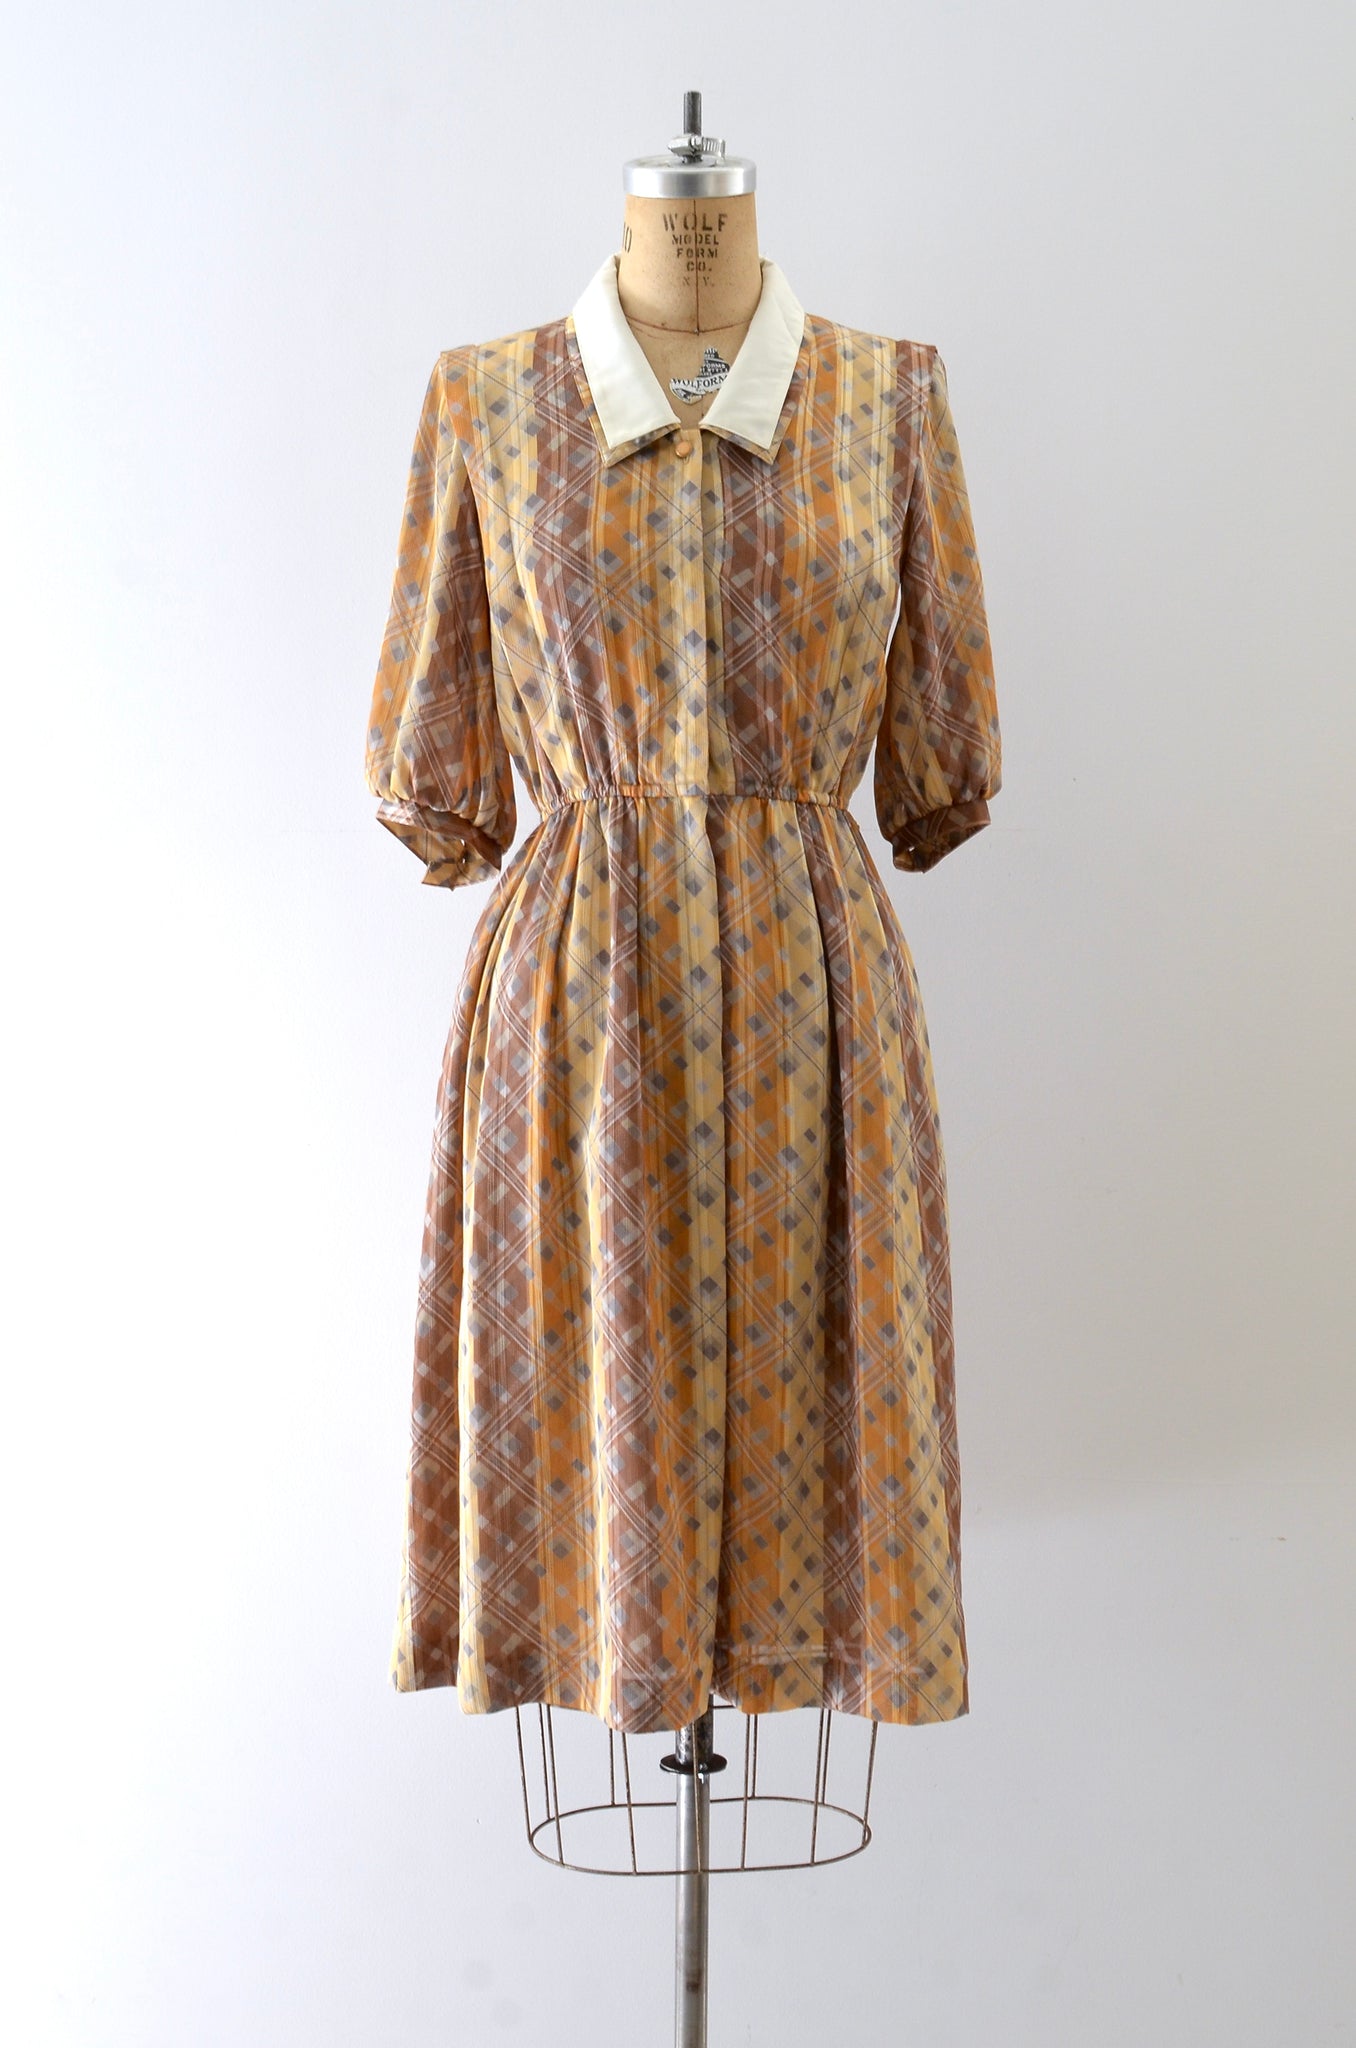 Vintage 1970s Printed Dress